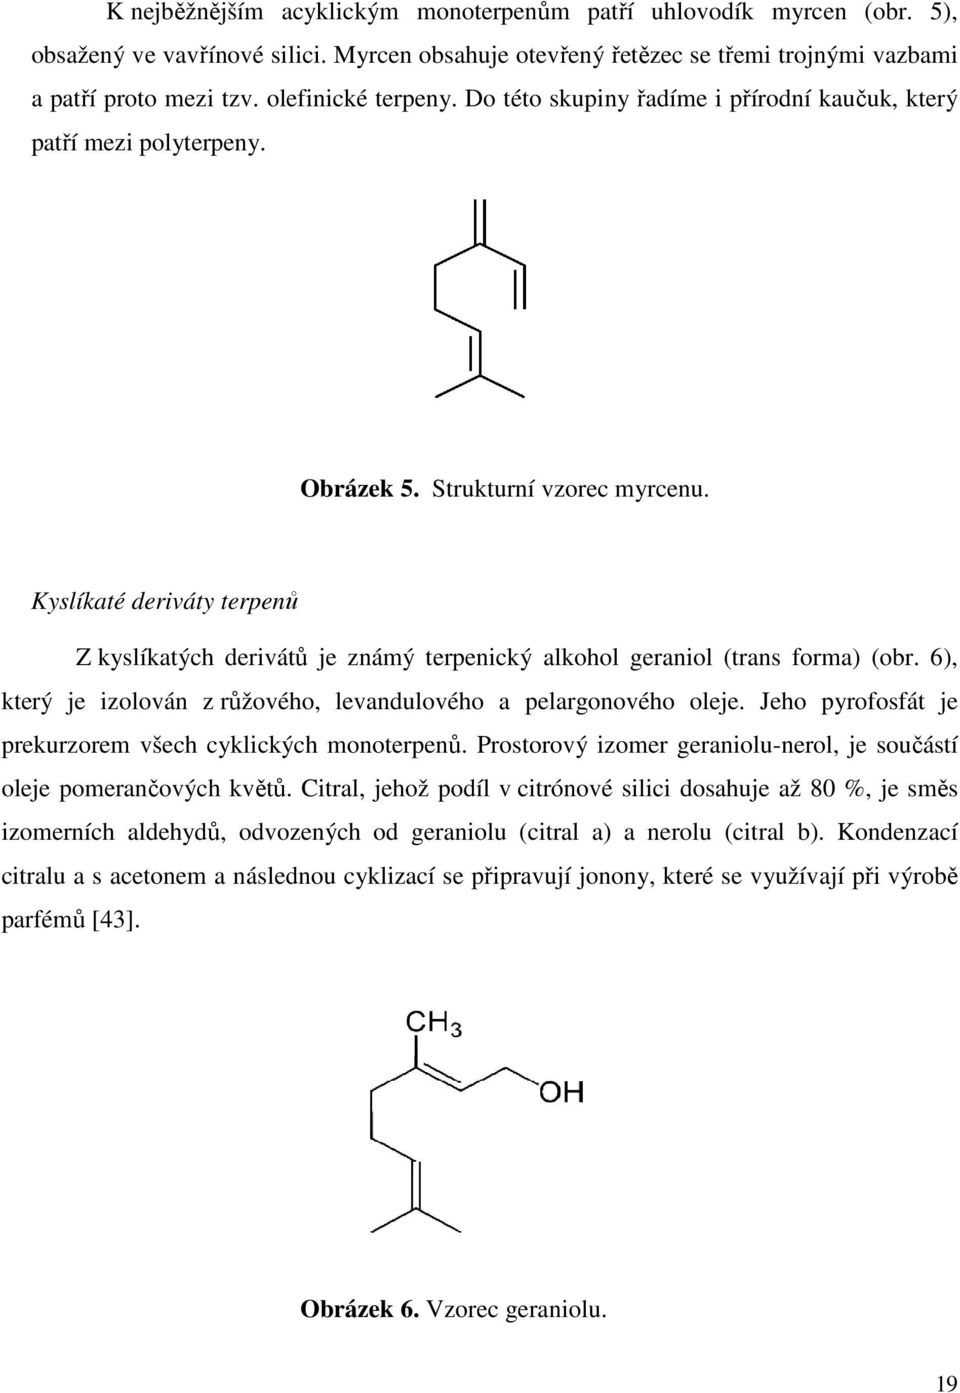 Kyslíkaté deriváty terpenů Z kyslíkatých derivátů je známý terpenický alkohol geraniol (trans forma) (obr. 6), který je izolován z růžového, levandulového a pelargonového oleje.